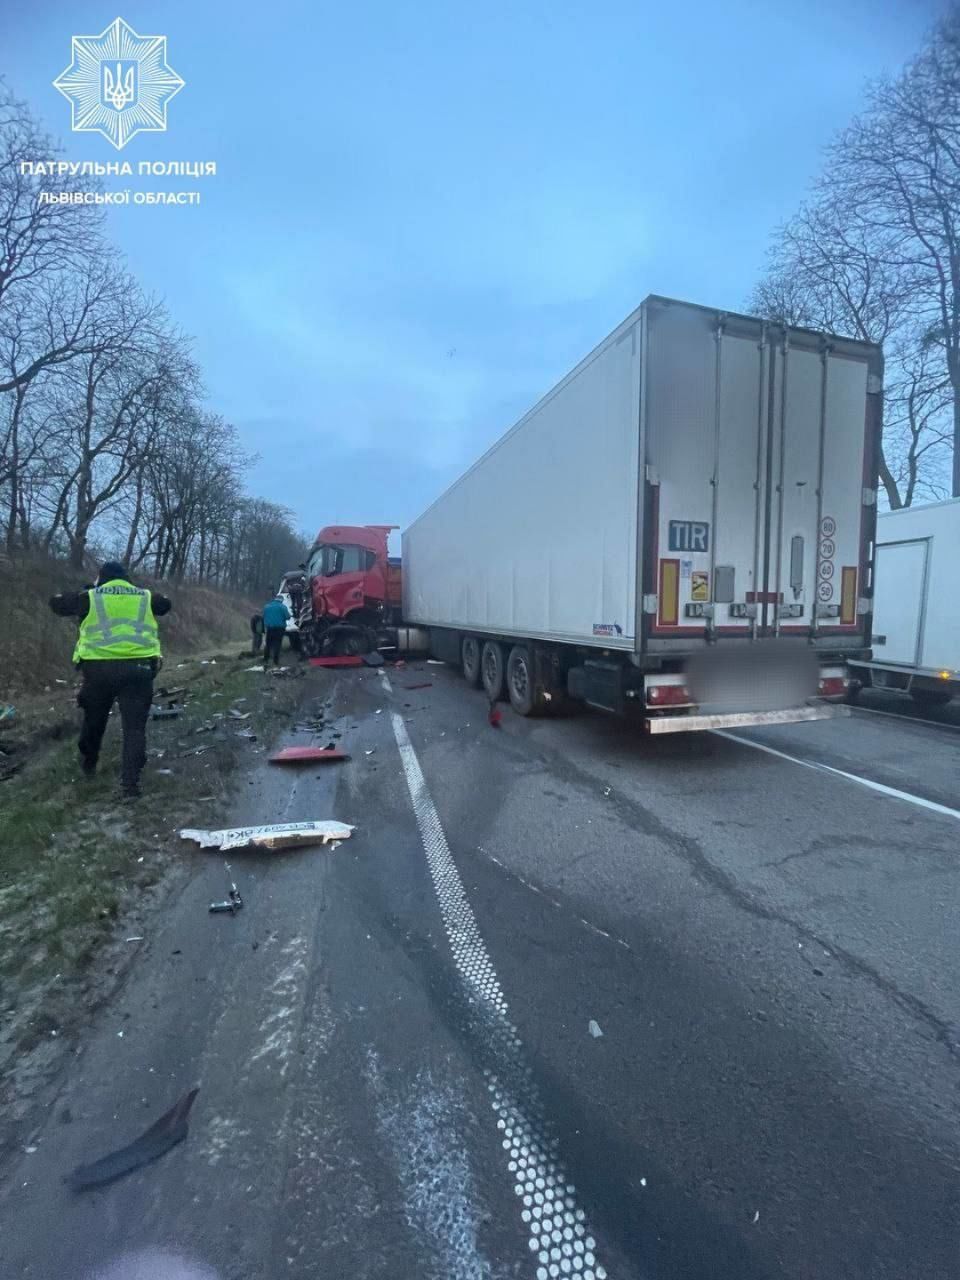 Утром 15 марта была перекрыта трасса Киев -Чоп из-за аварии двух грузовиков. ДТП произошло возле села Дидилов во Львовской области.